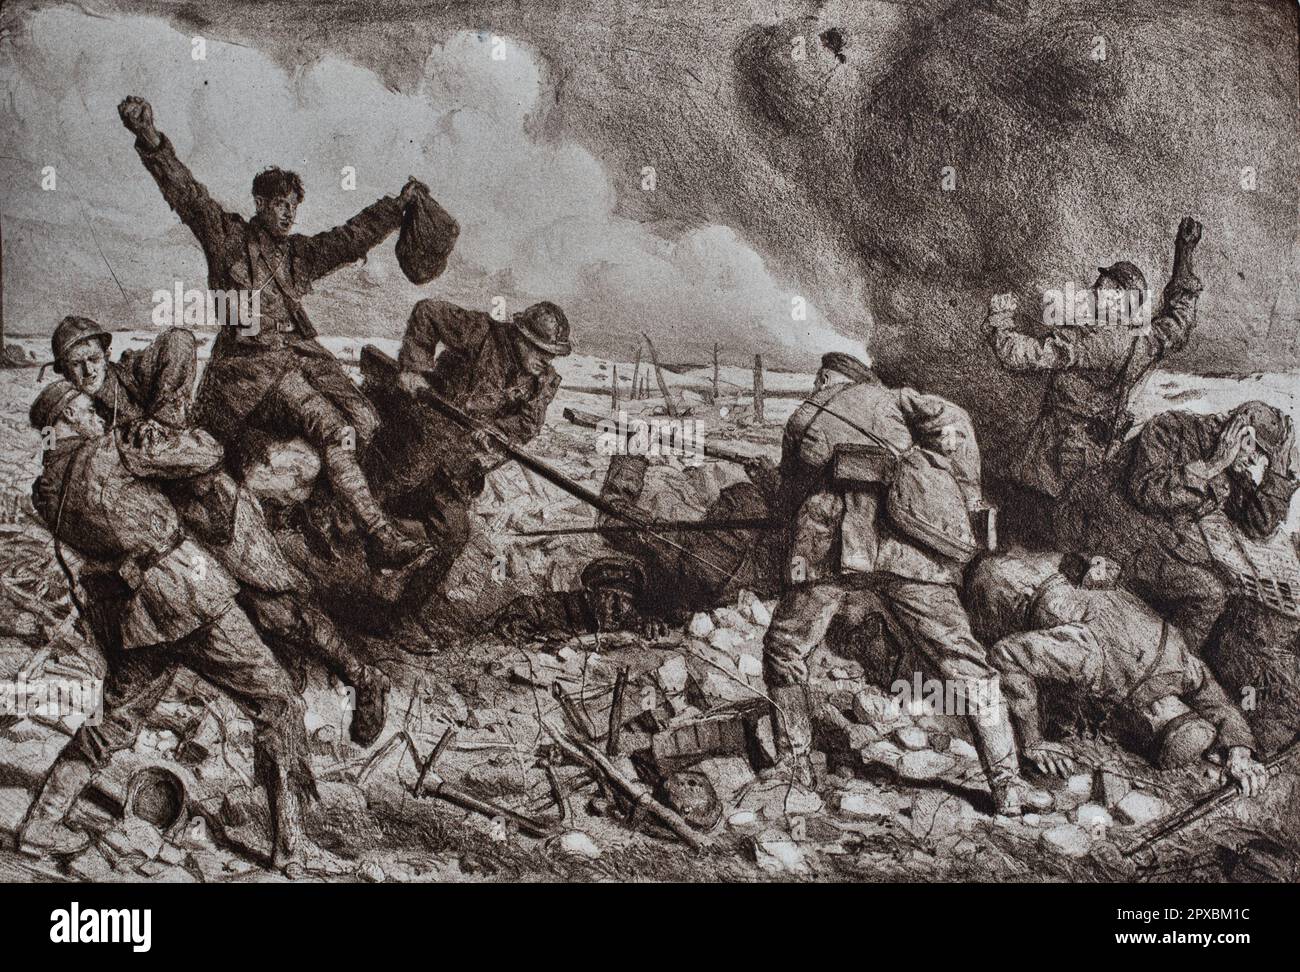 Erster Weltkrieg Frankreich im Krieg. Französischer Infanterie-Angriff von Hand zu Hand auf deutsche Positionen. Von L. Jonas Stockfoto